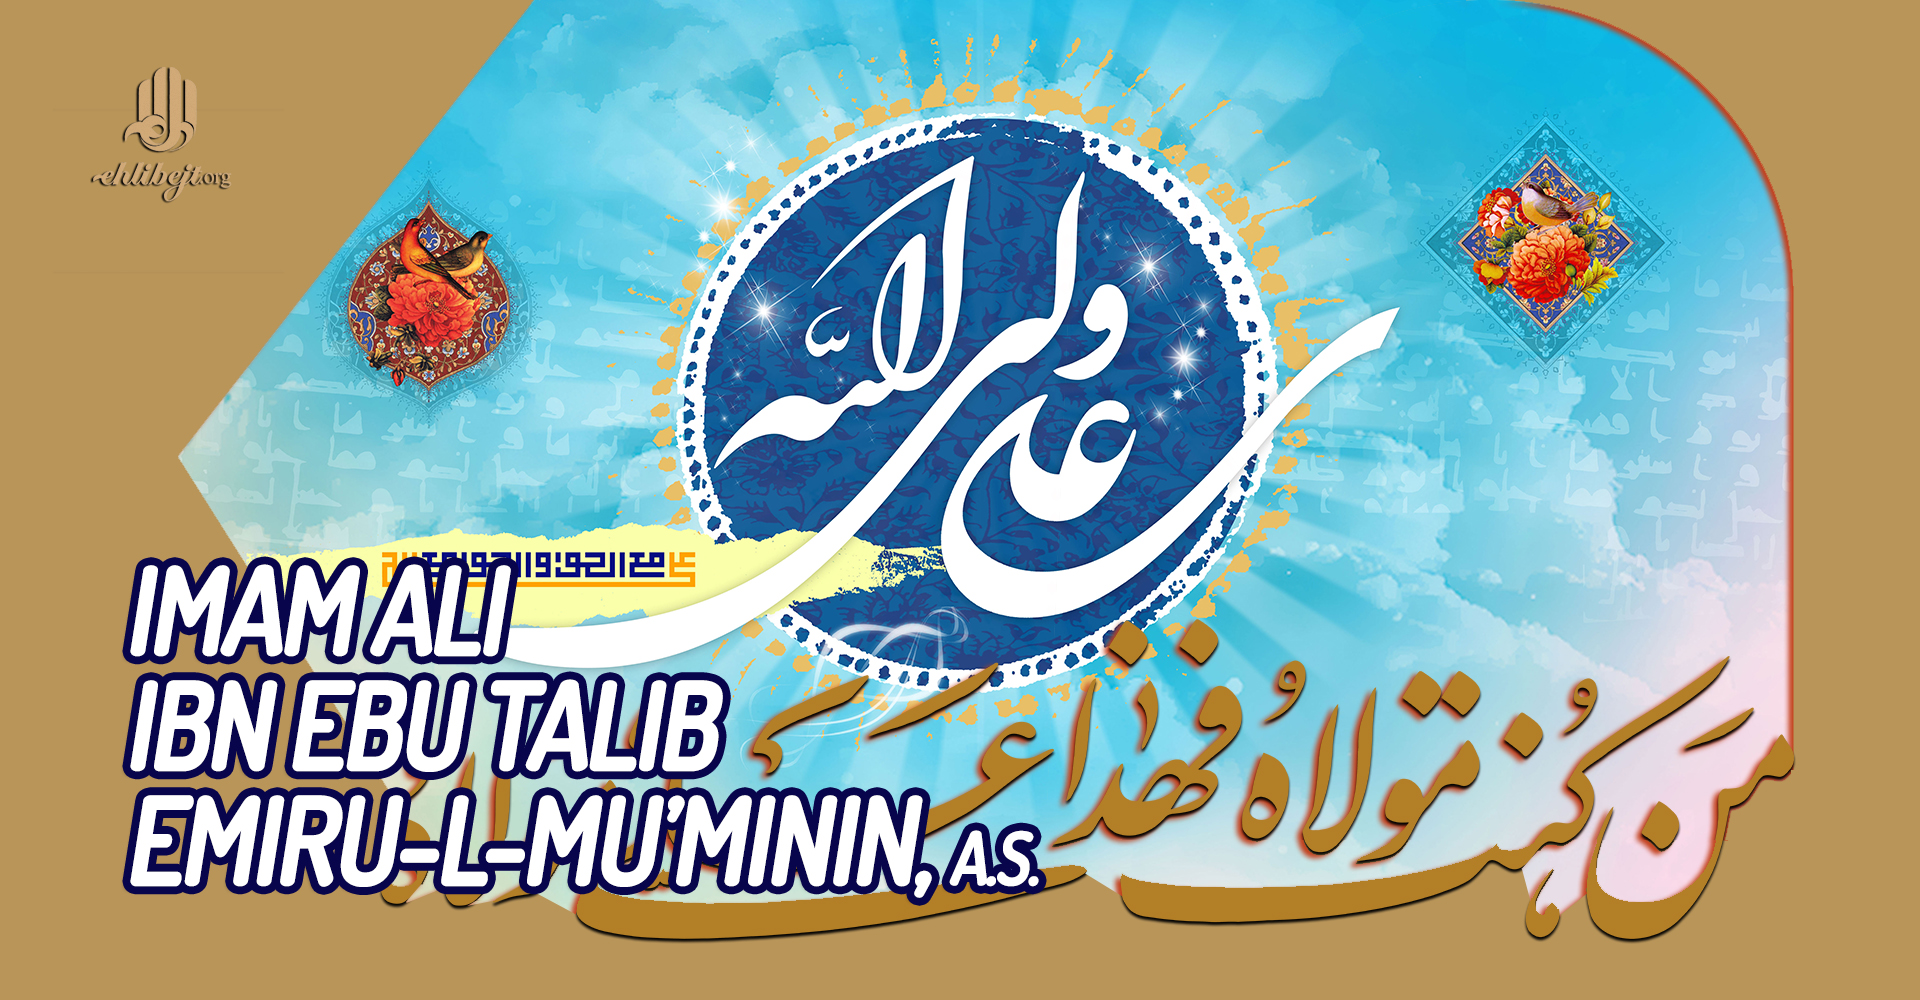 Imam Ali ibn Ebu Talib Emiru-l-mu'minin, a.s.